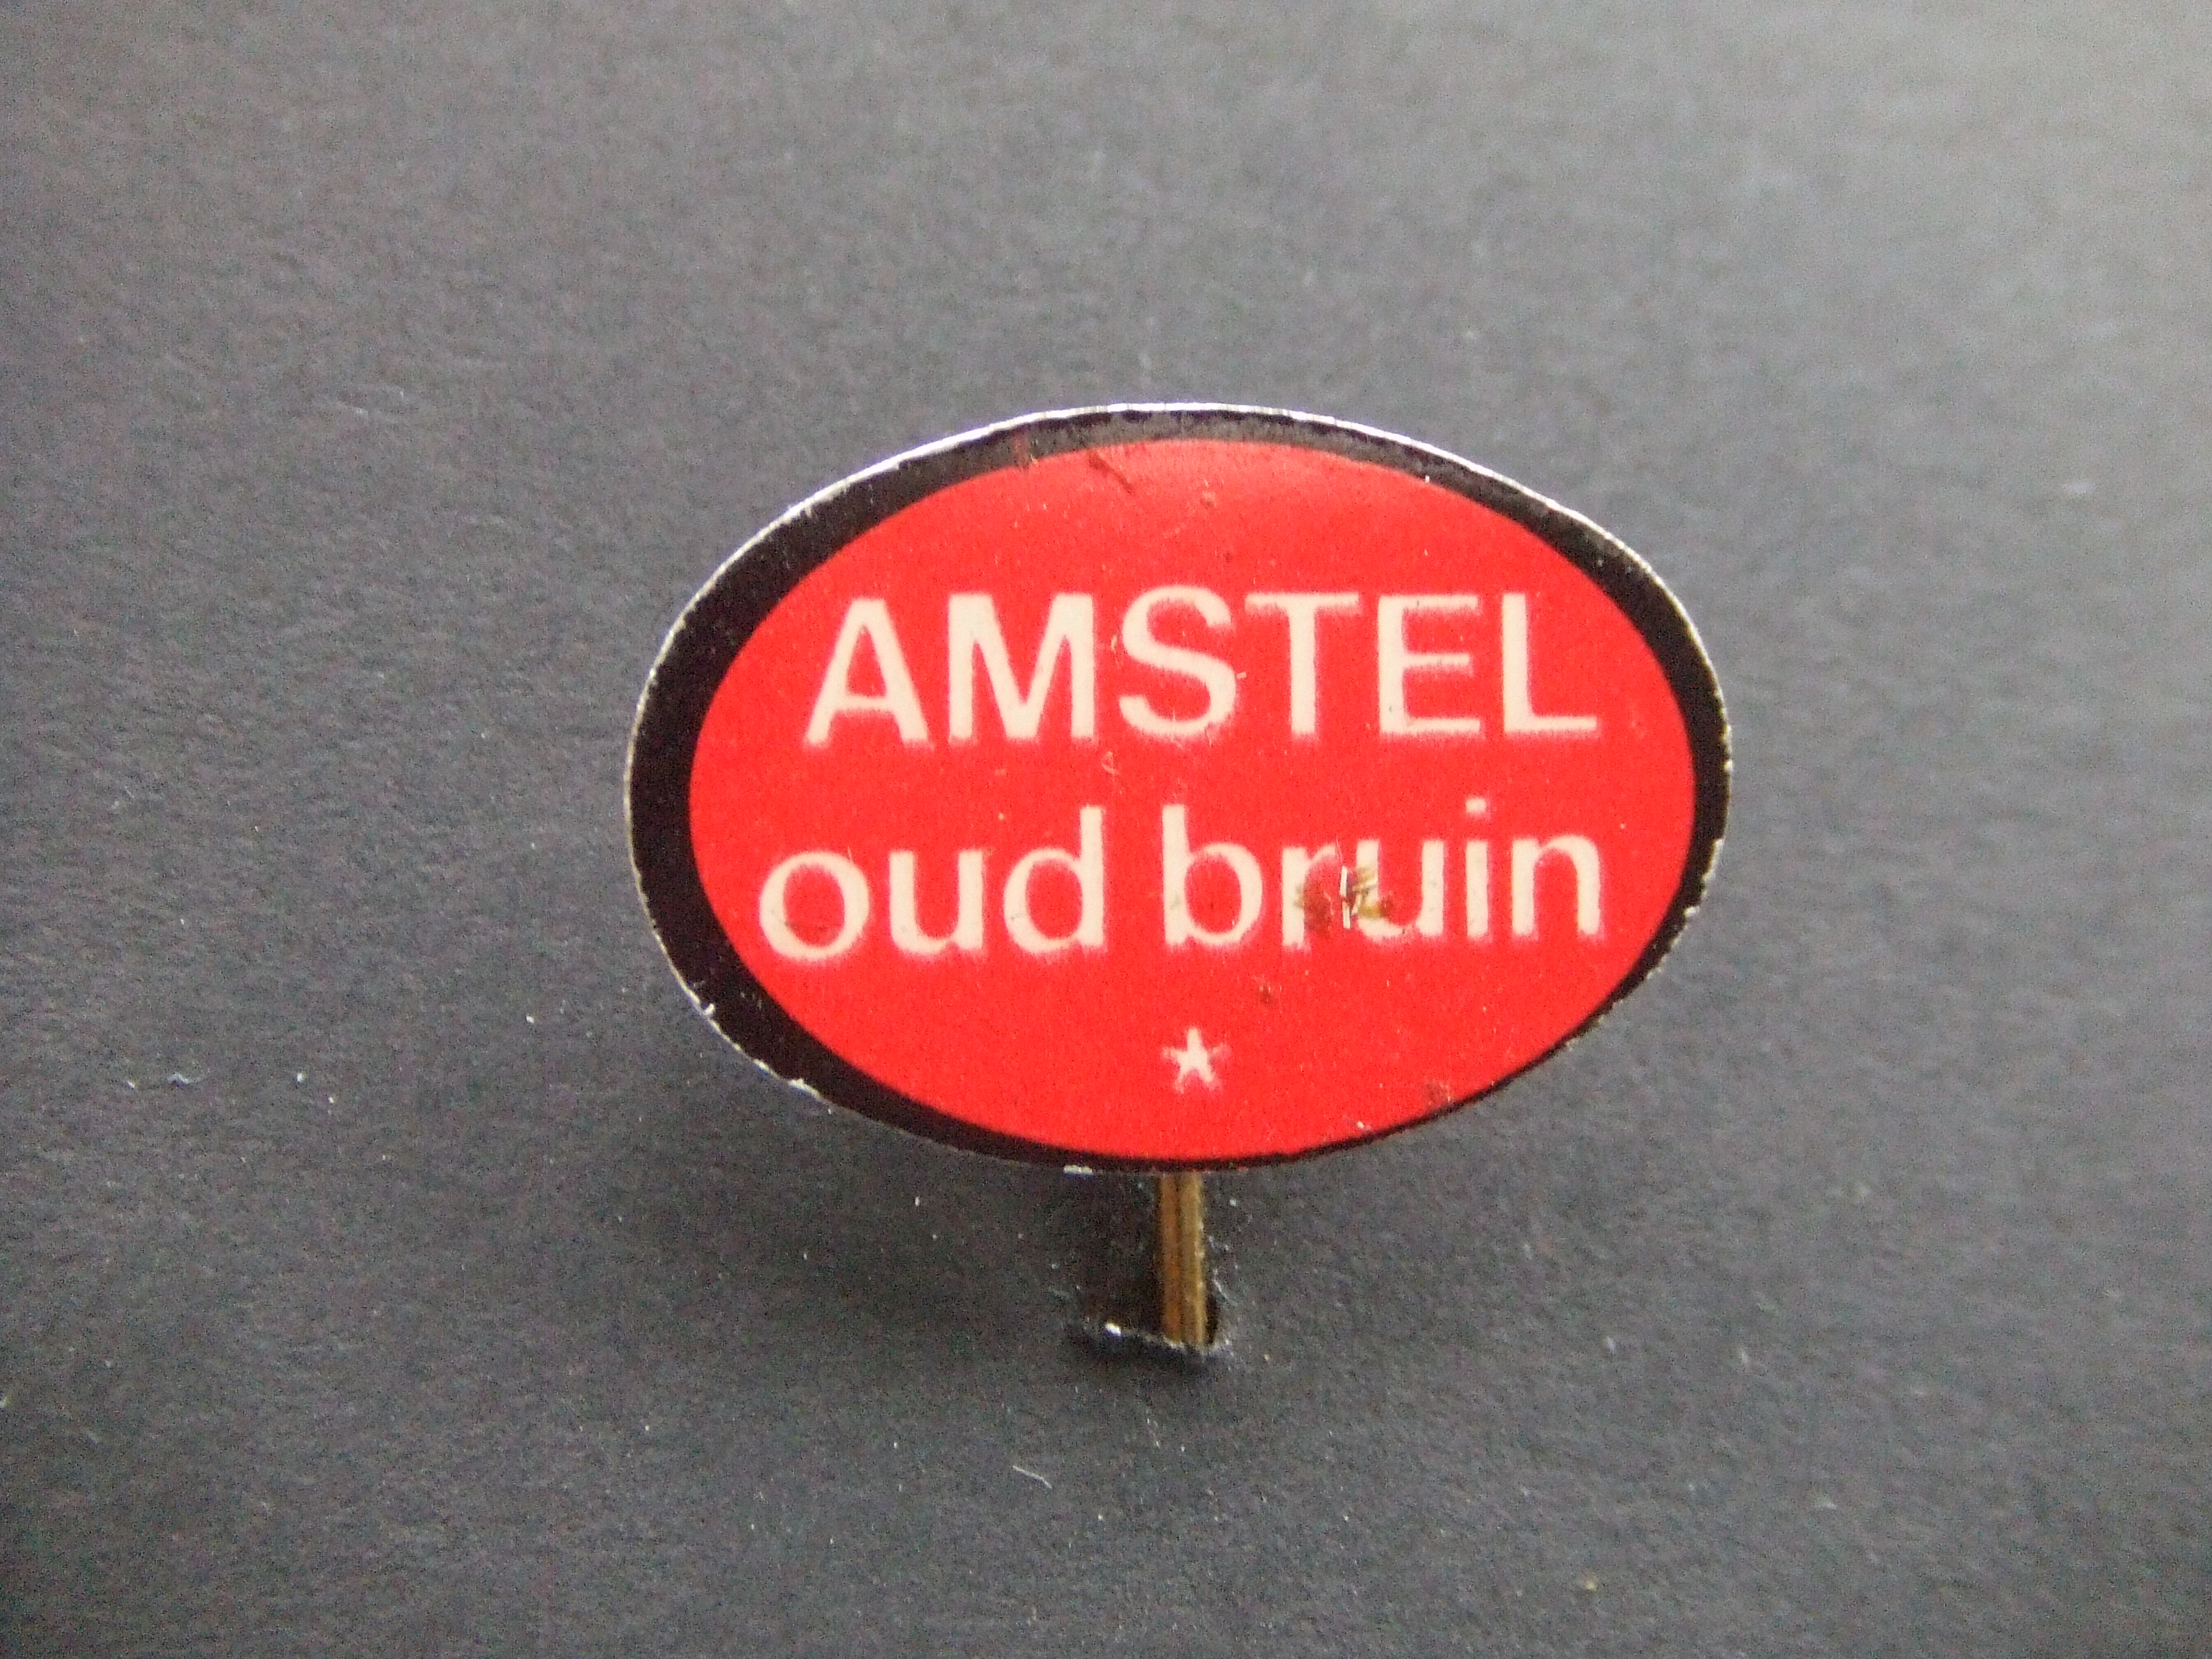 Amstel oud bruin laag alcoholgehalte geproduceerd door Heineken